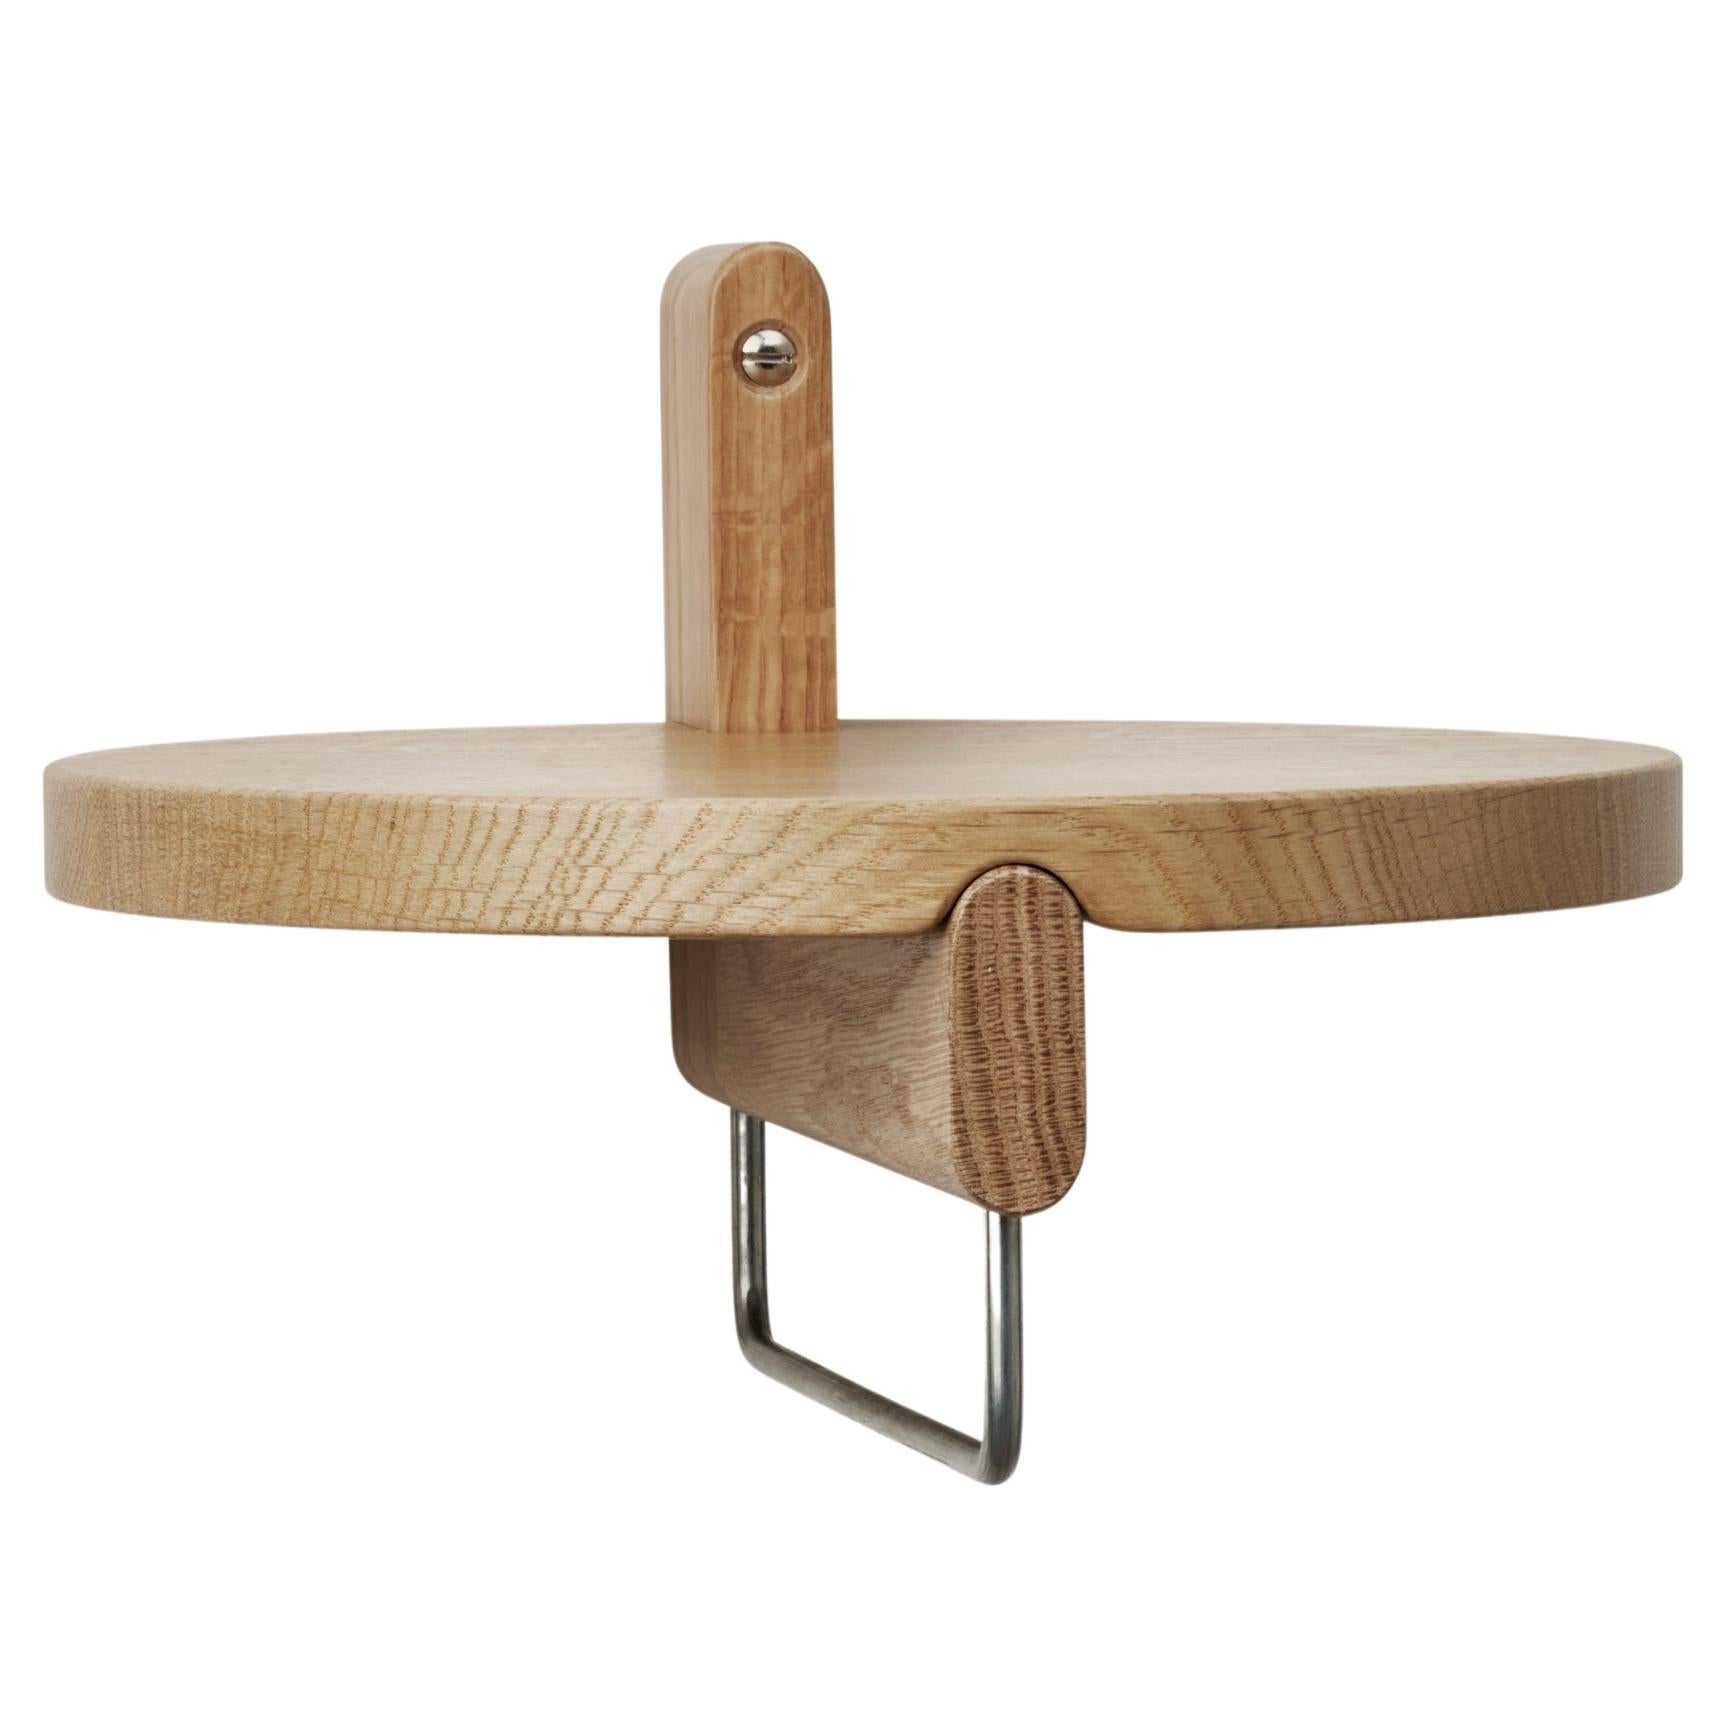 Natural Rondelle Round Shelf with Hanger by Storängen Design